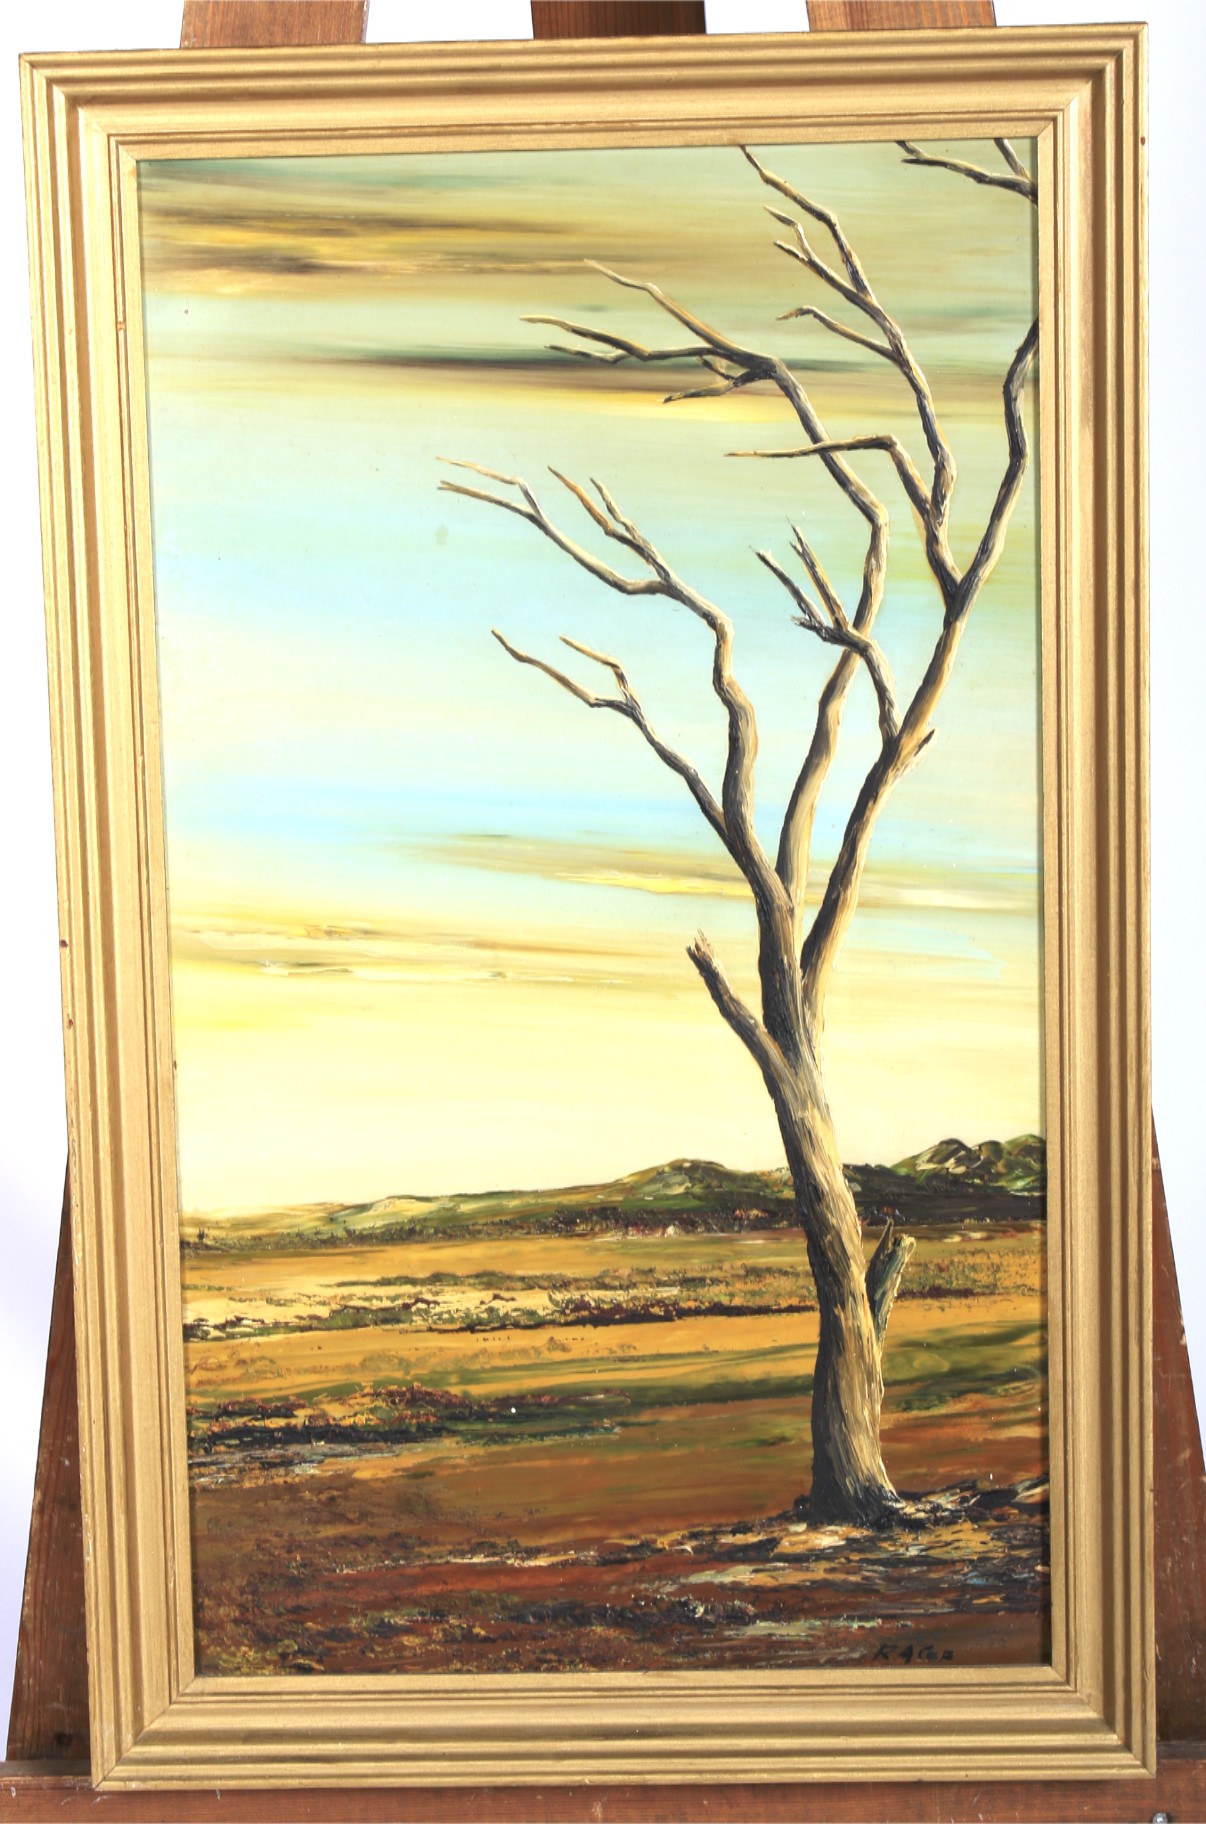 RA Coe (Australian, 20th Century), Bare Tree in Landscape, oil on board.